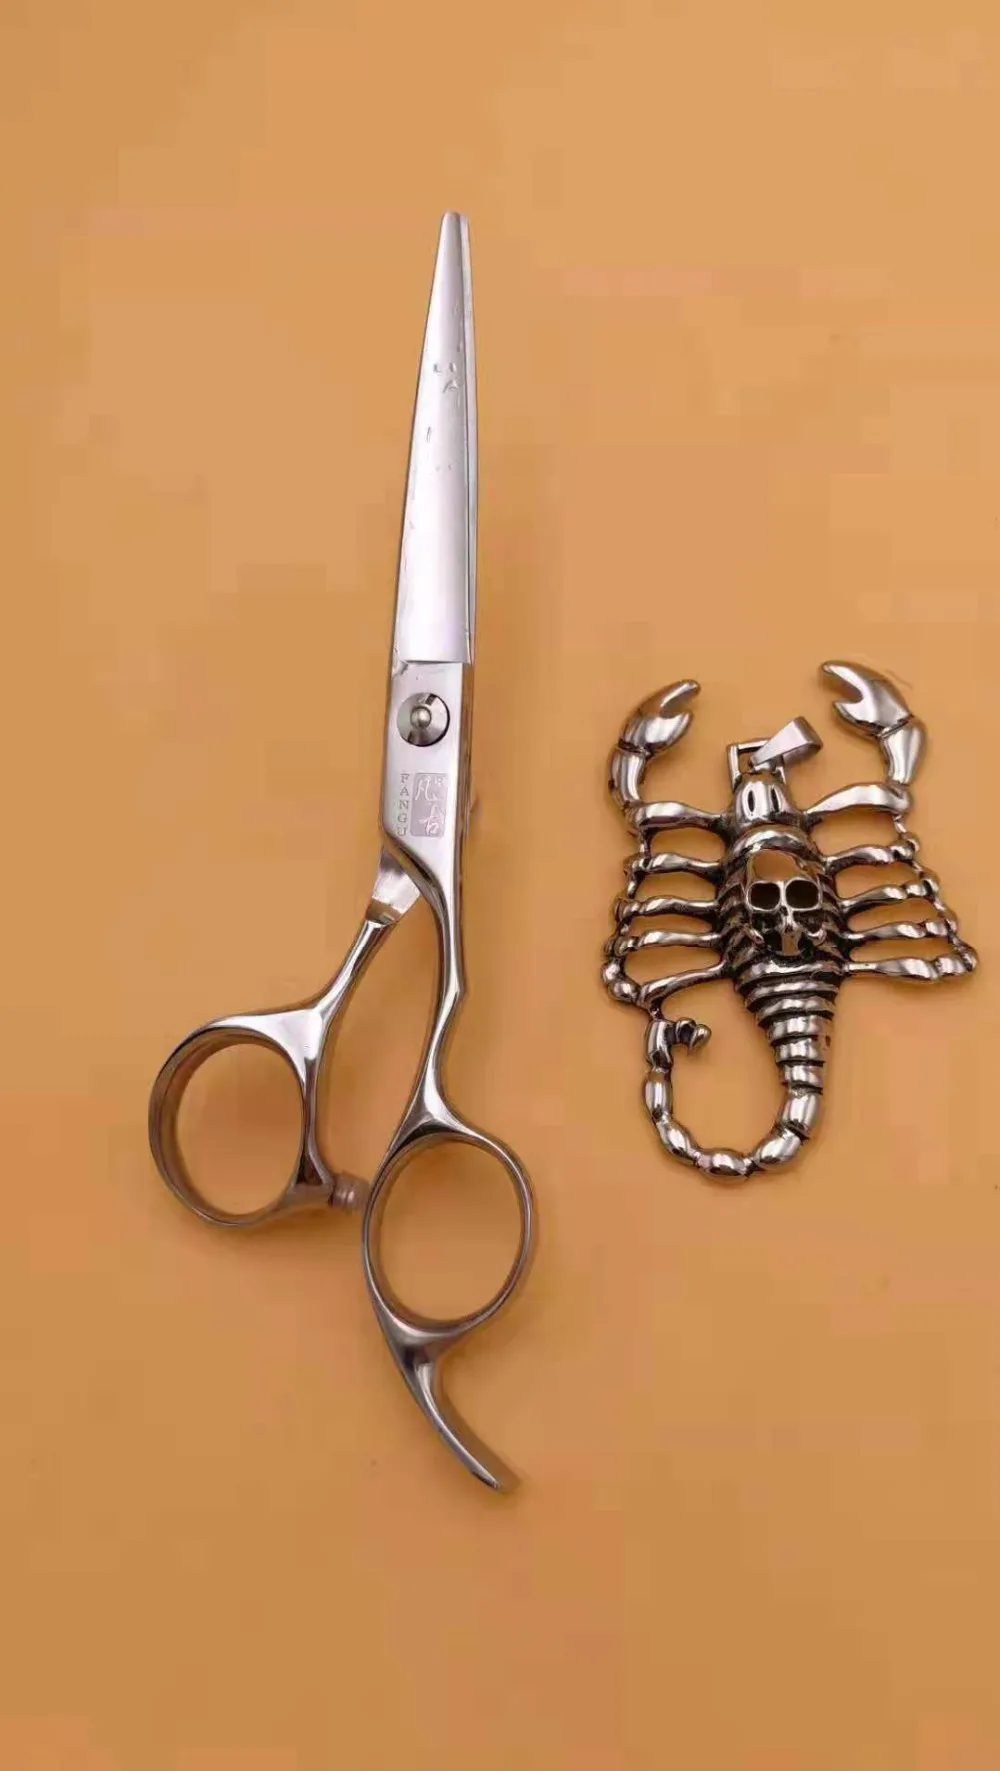 Ван ГУ дюймов Резка истончение инструмент для укладки волос ножницы нержавеющая сталь салон парикмахерские